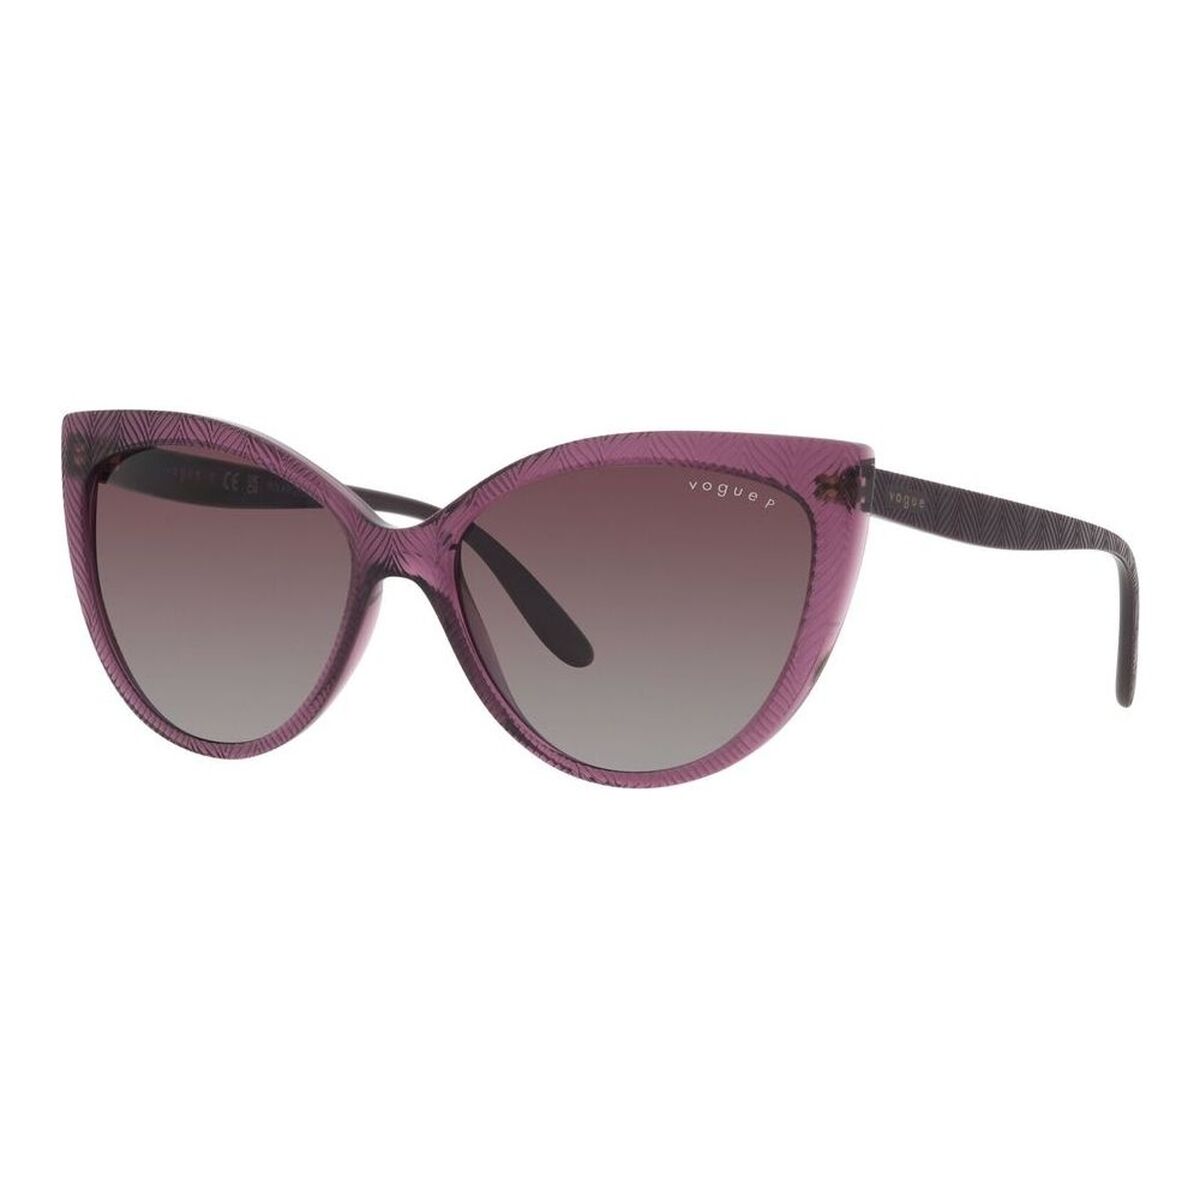 Ladies' Sunglasses Vogue VO 5484S